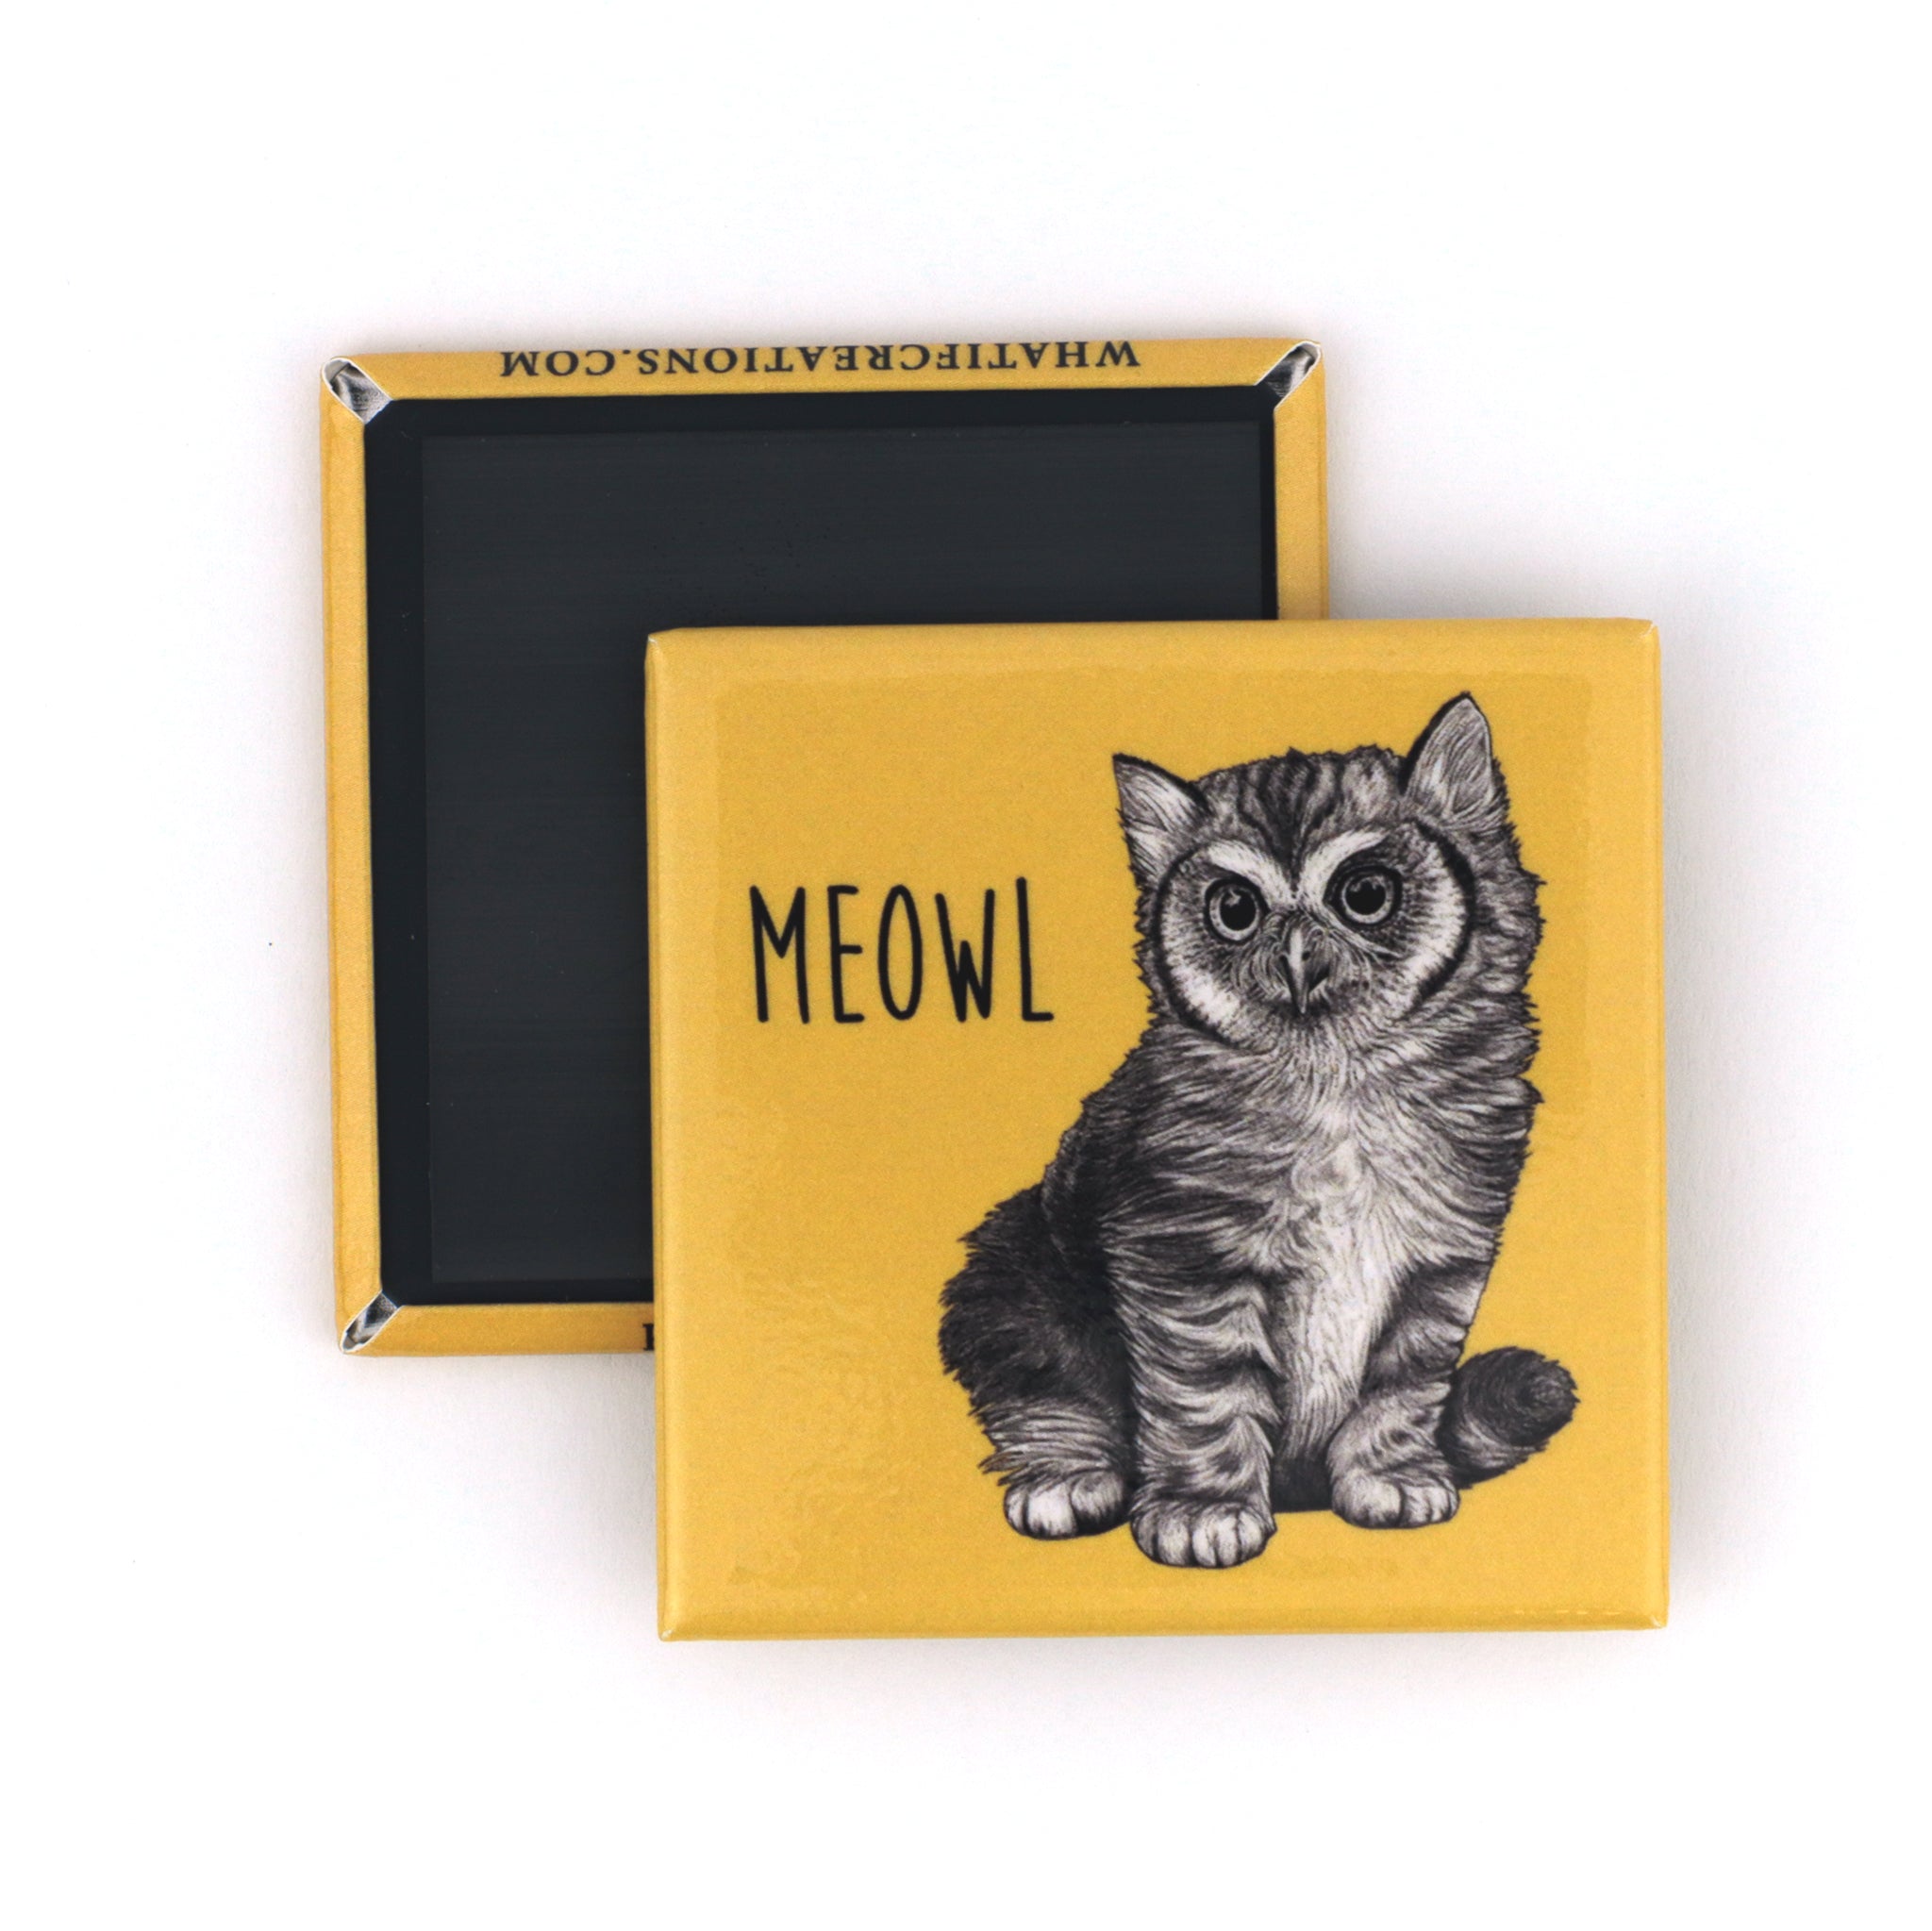 Meowl | Cat + Owl Hybrid Animal | 2" Fridge Magnet